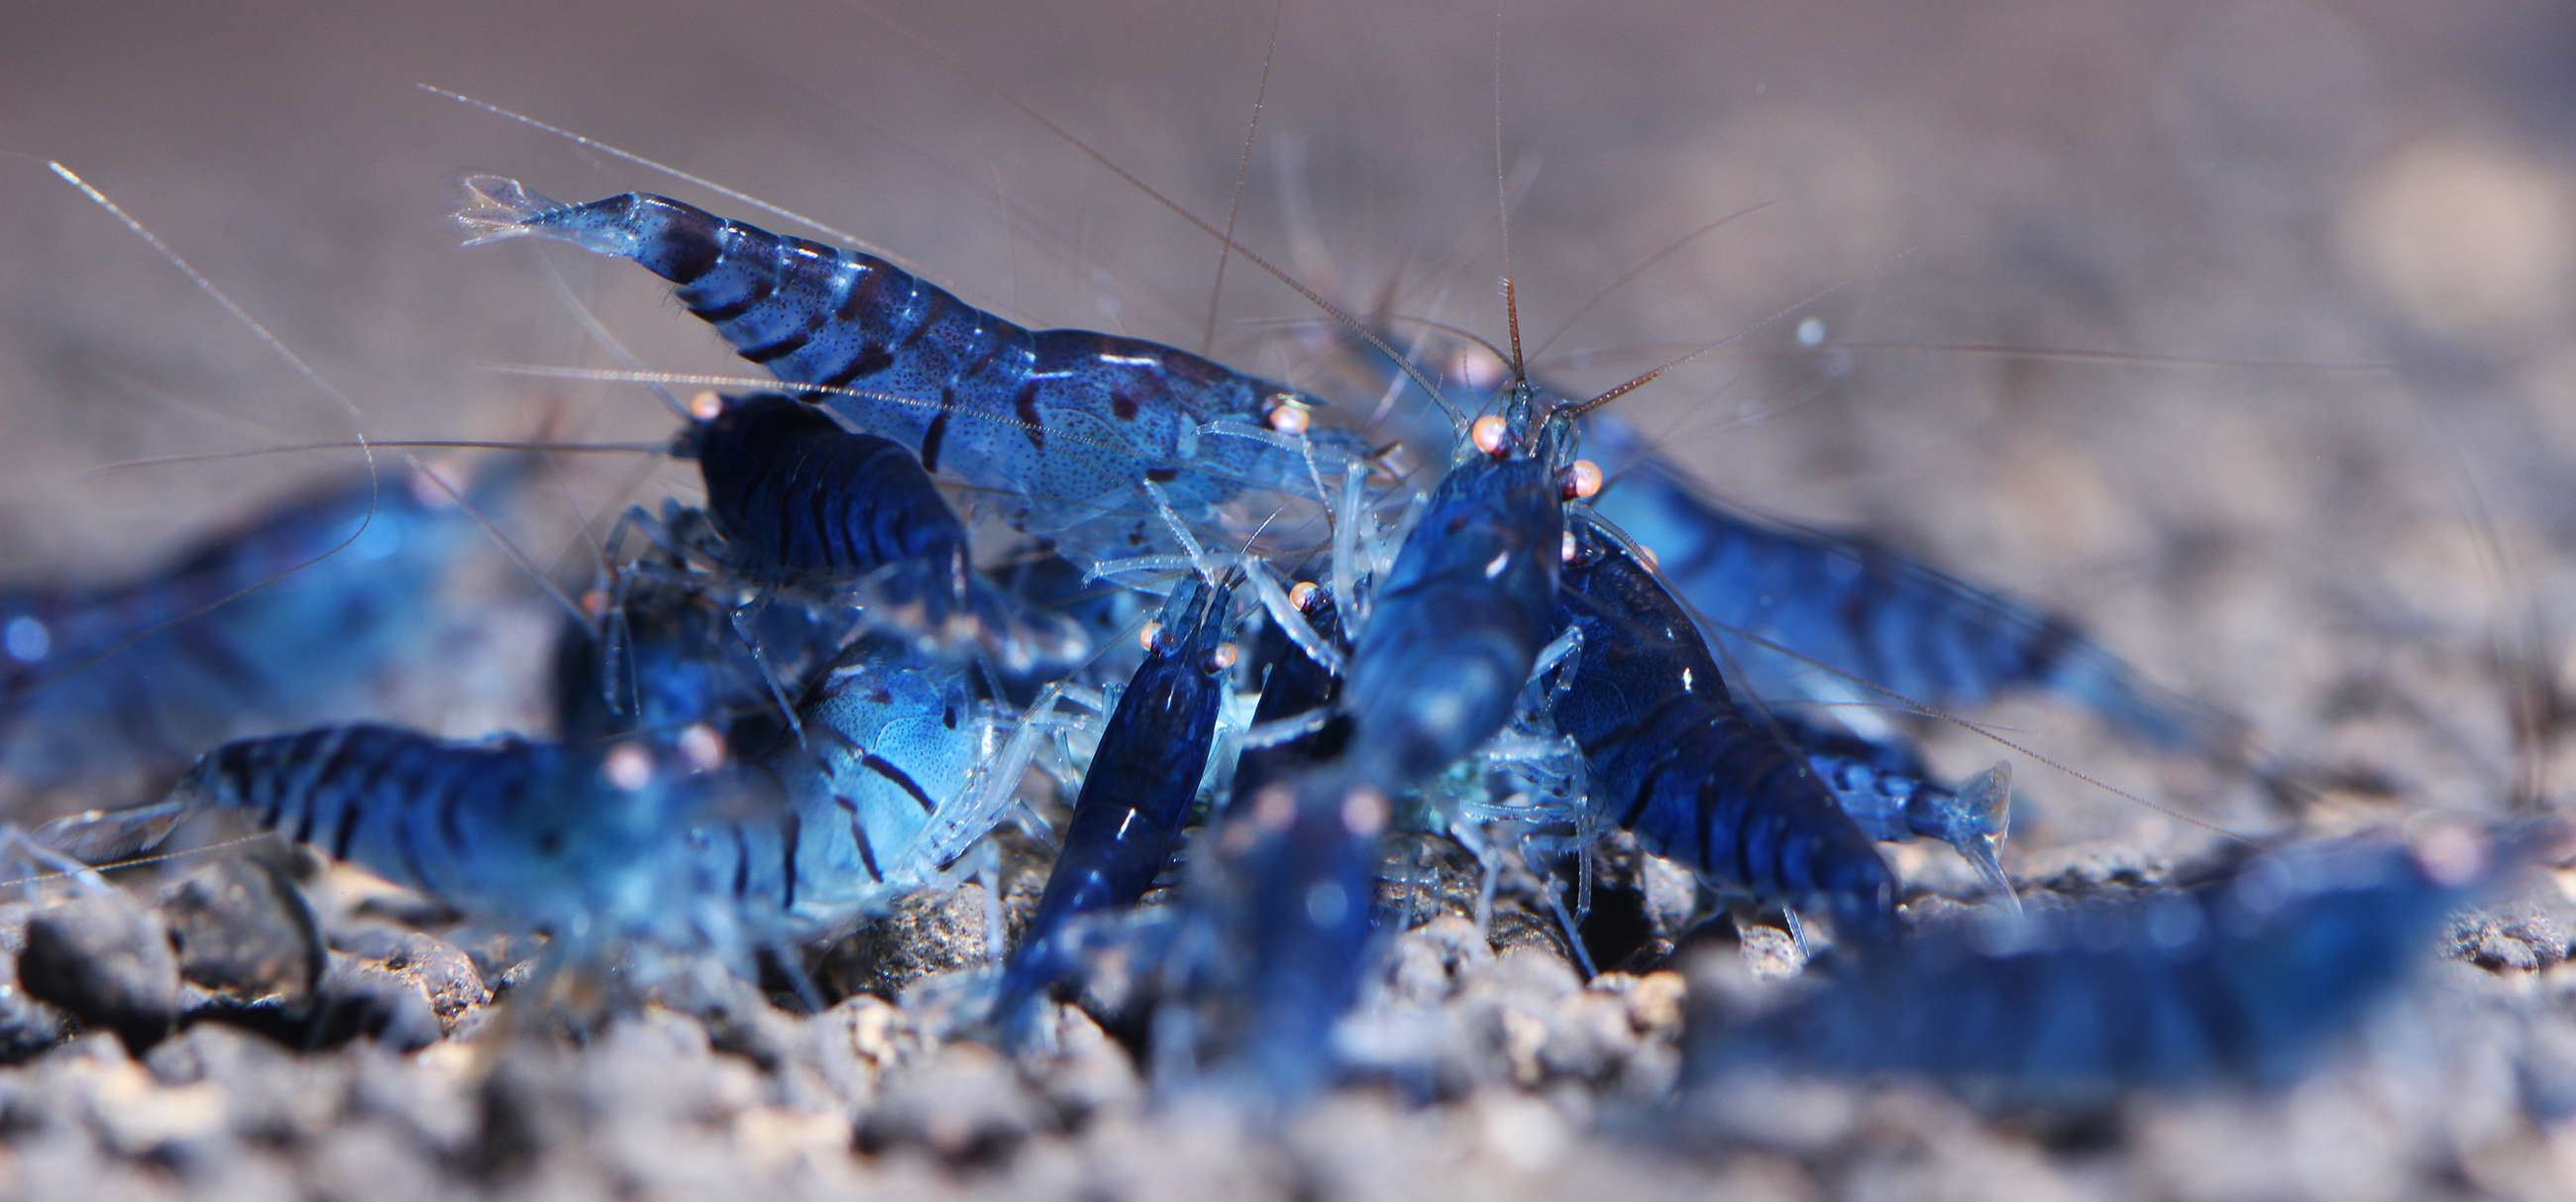 A group of Blue Tiger shrimp feeding.